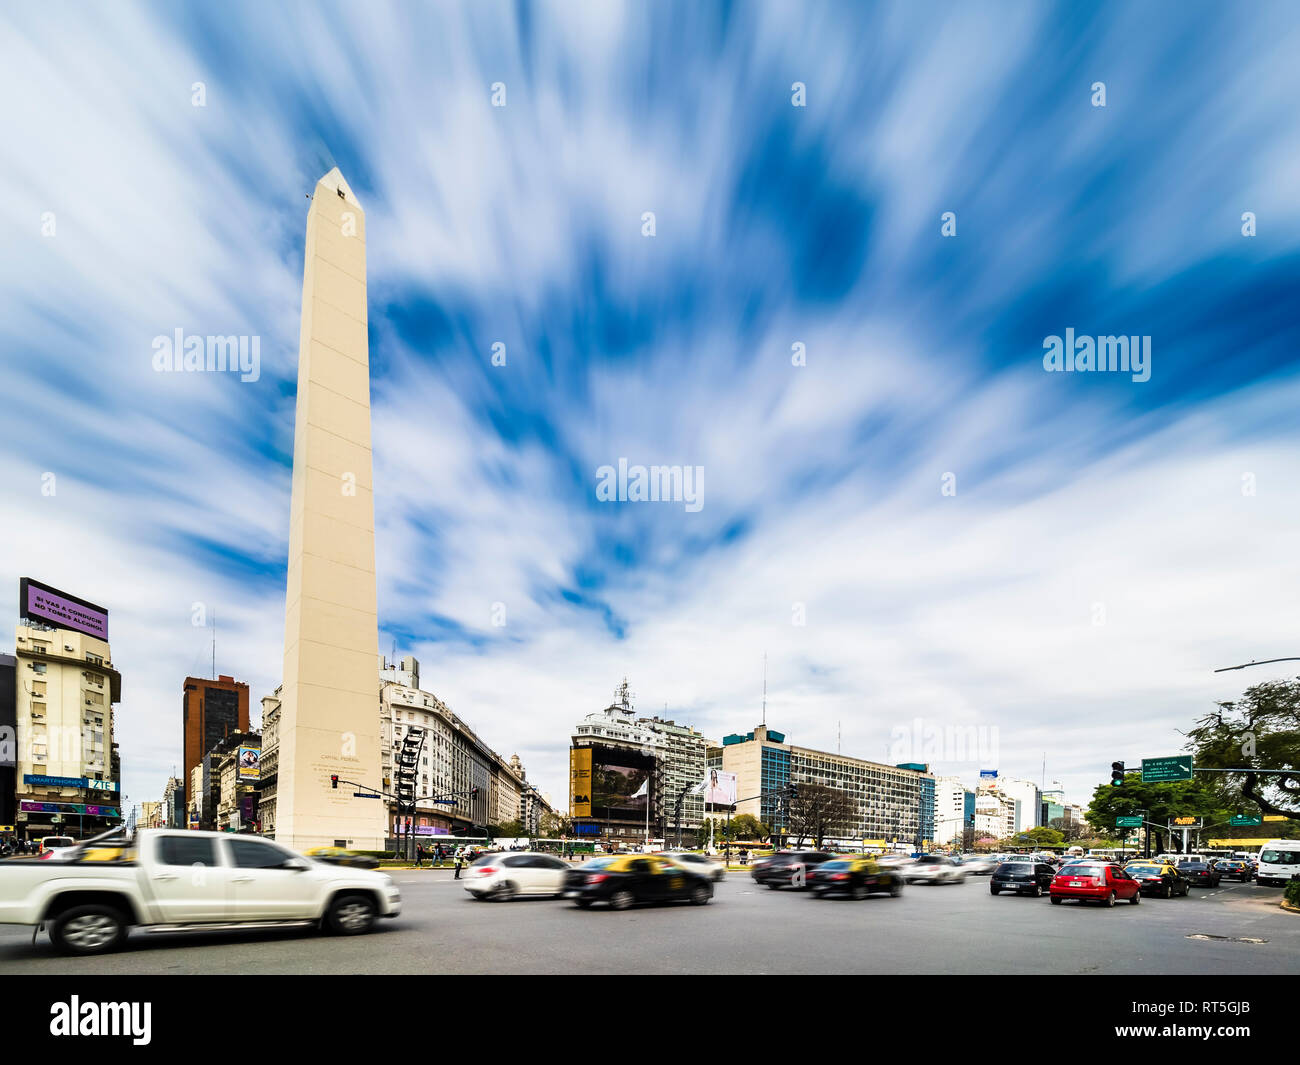 Argentinien, Buenos Aires, Stadtzentrum mit obelisco und starkem Verkehr, Avenida 9 de Julio an der Plaza de la Republica Foto Stock